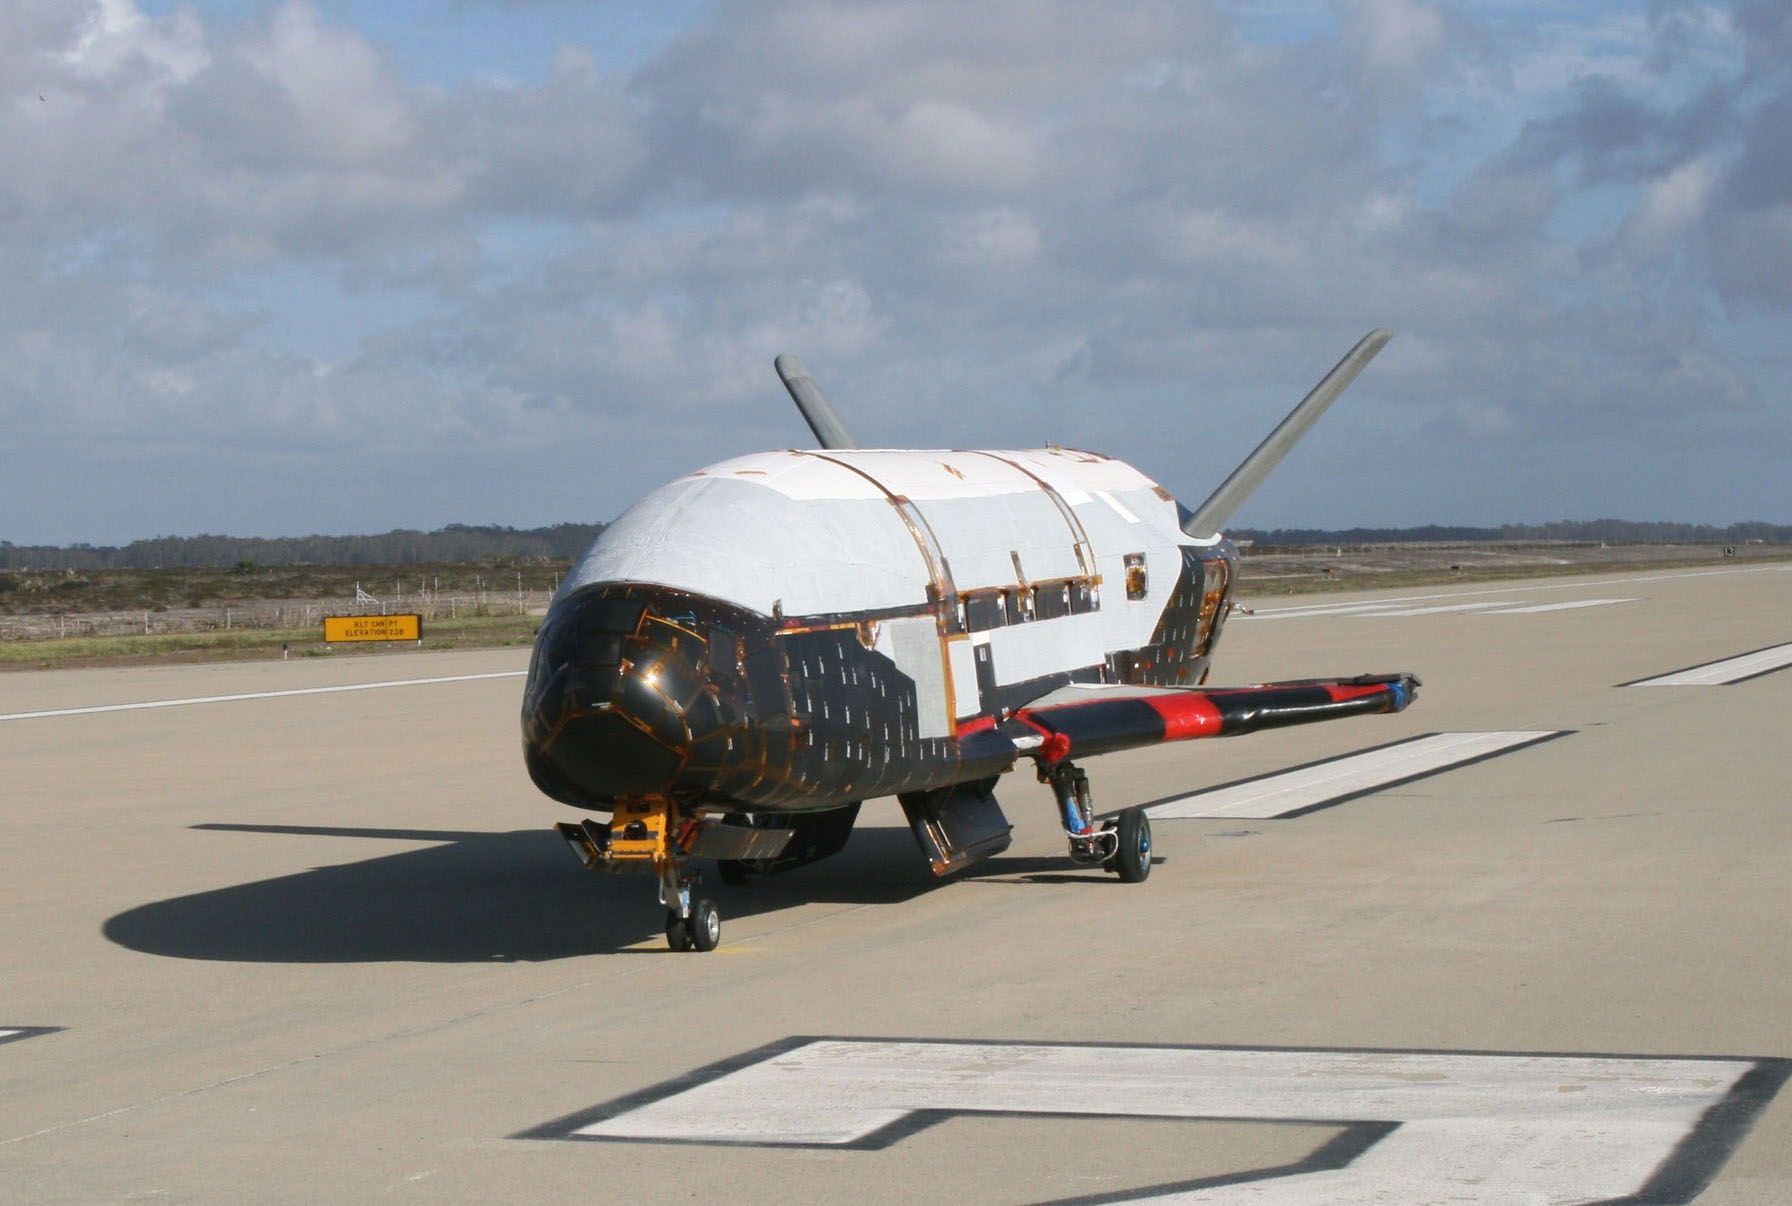 X-37B անօդաչու թռչող սարքը